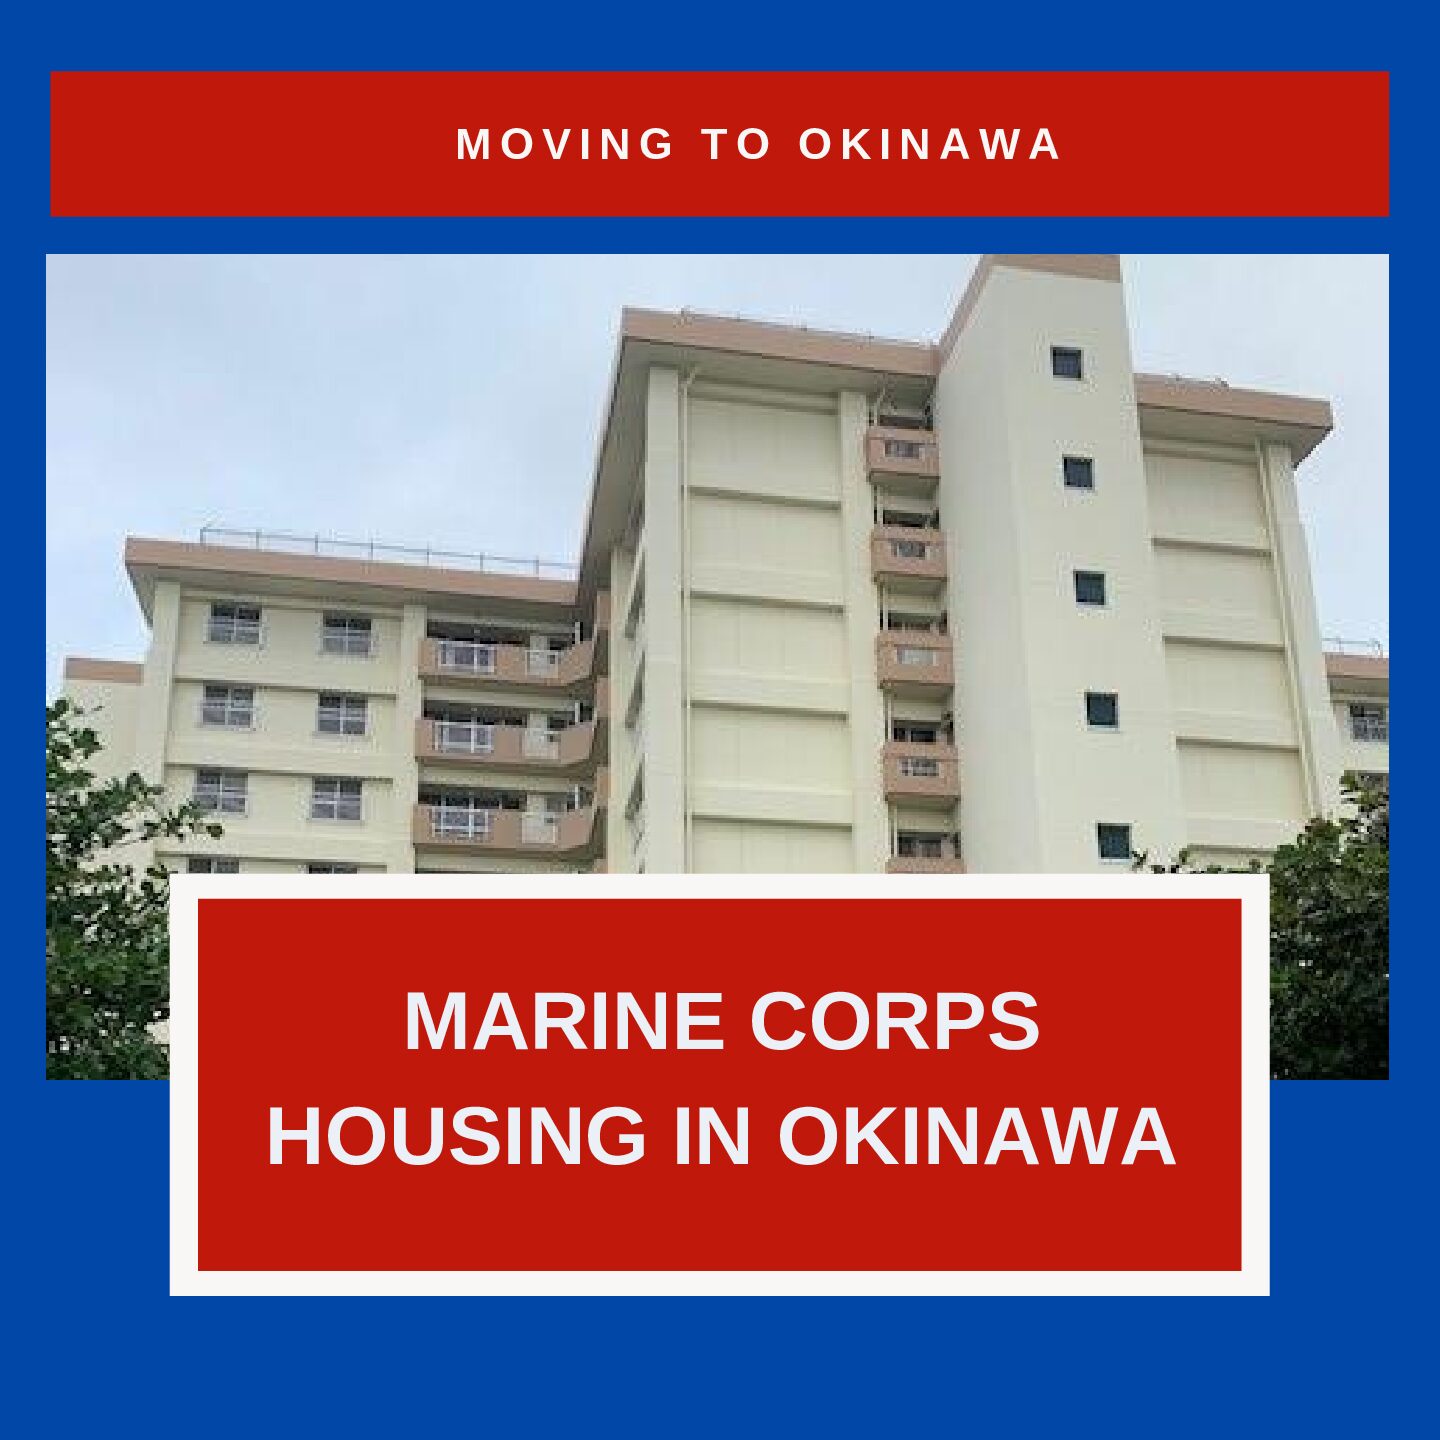 Marine Corps Housing in Okinawa